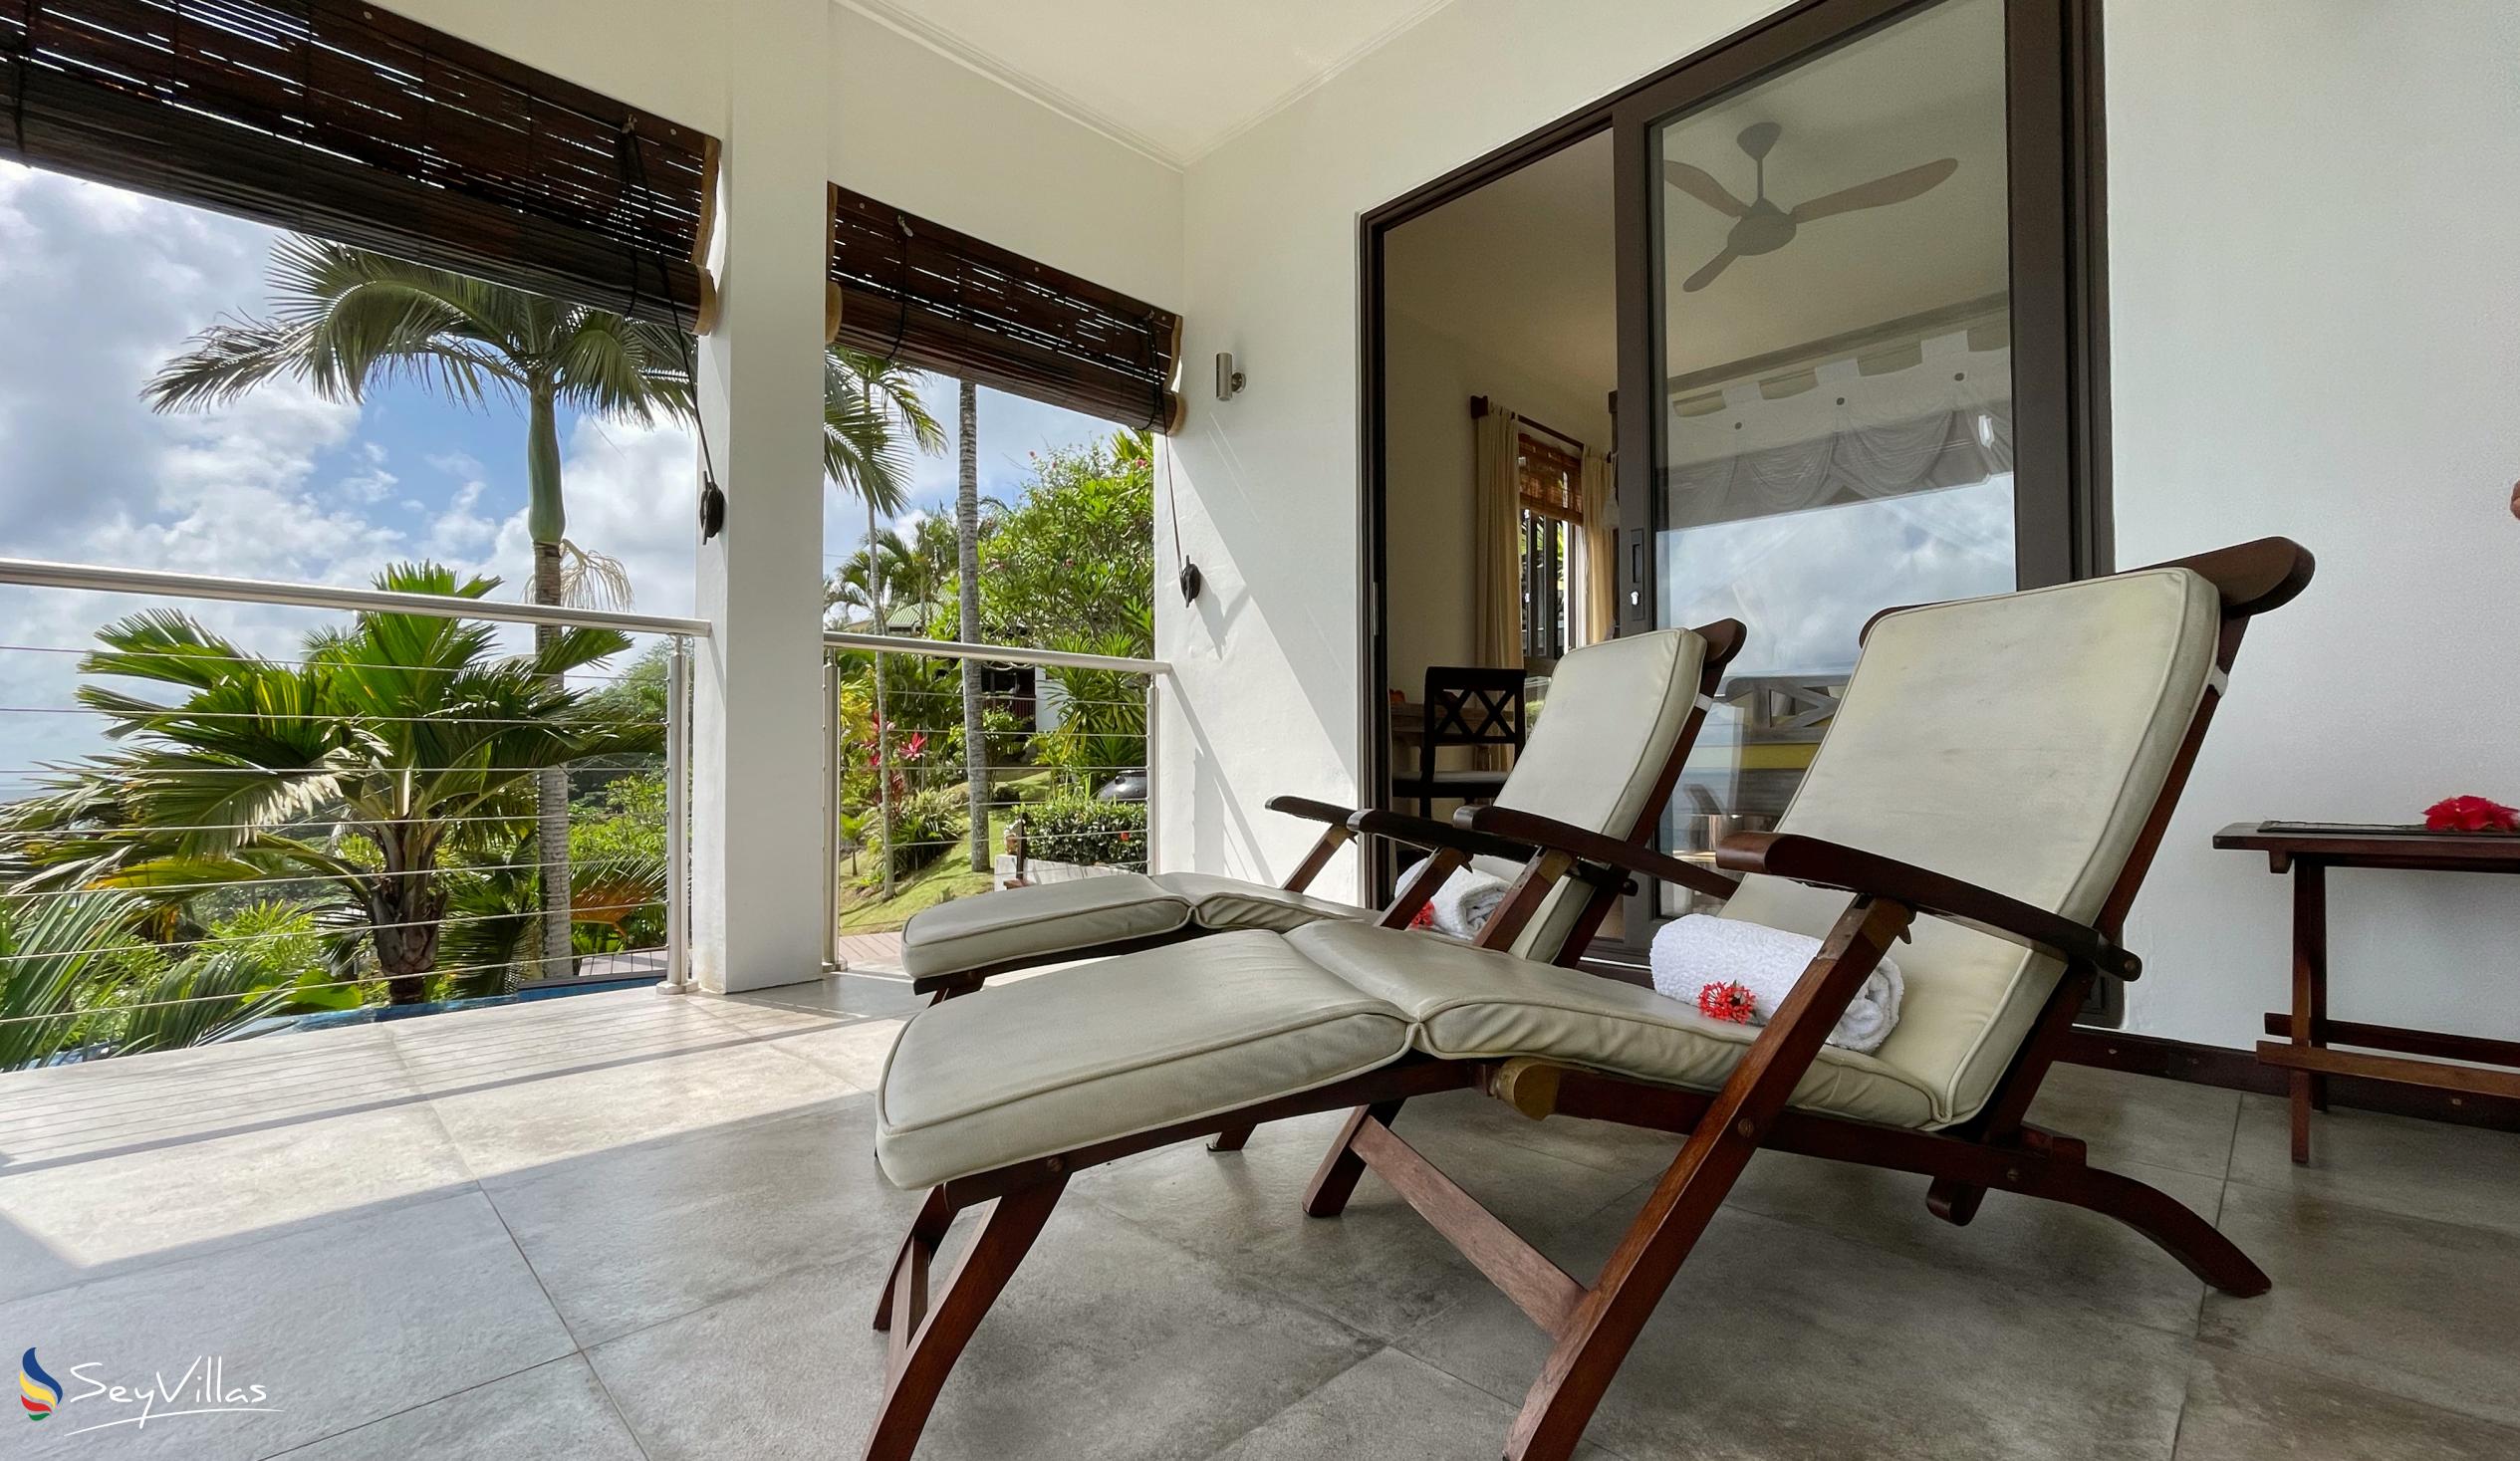 Photo 107: Chalets Bougainville - Ground Floor Apartment Villa Lemon - Mahé (Seychelles)